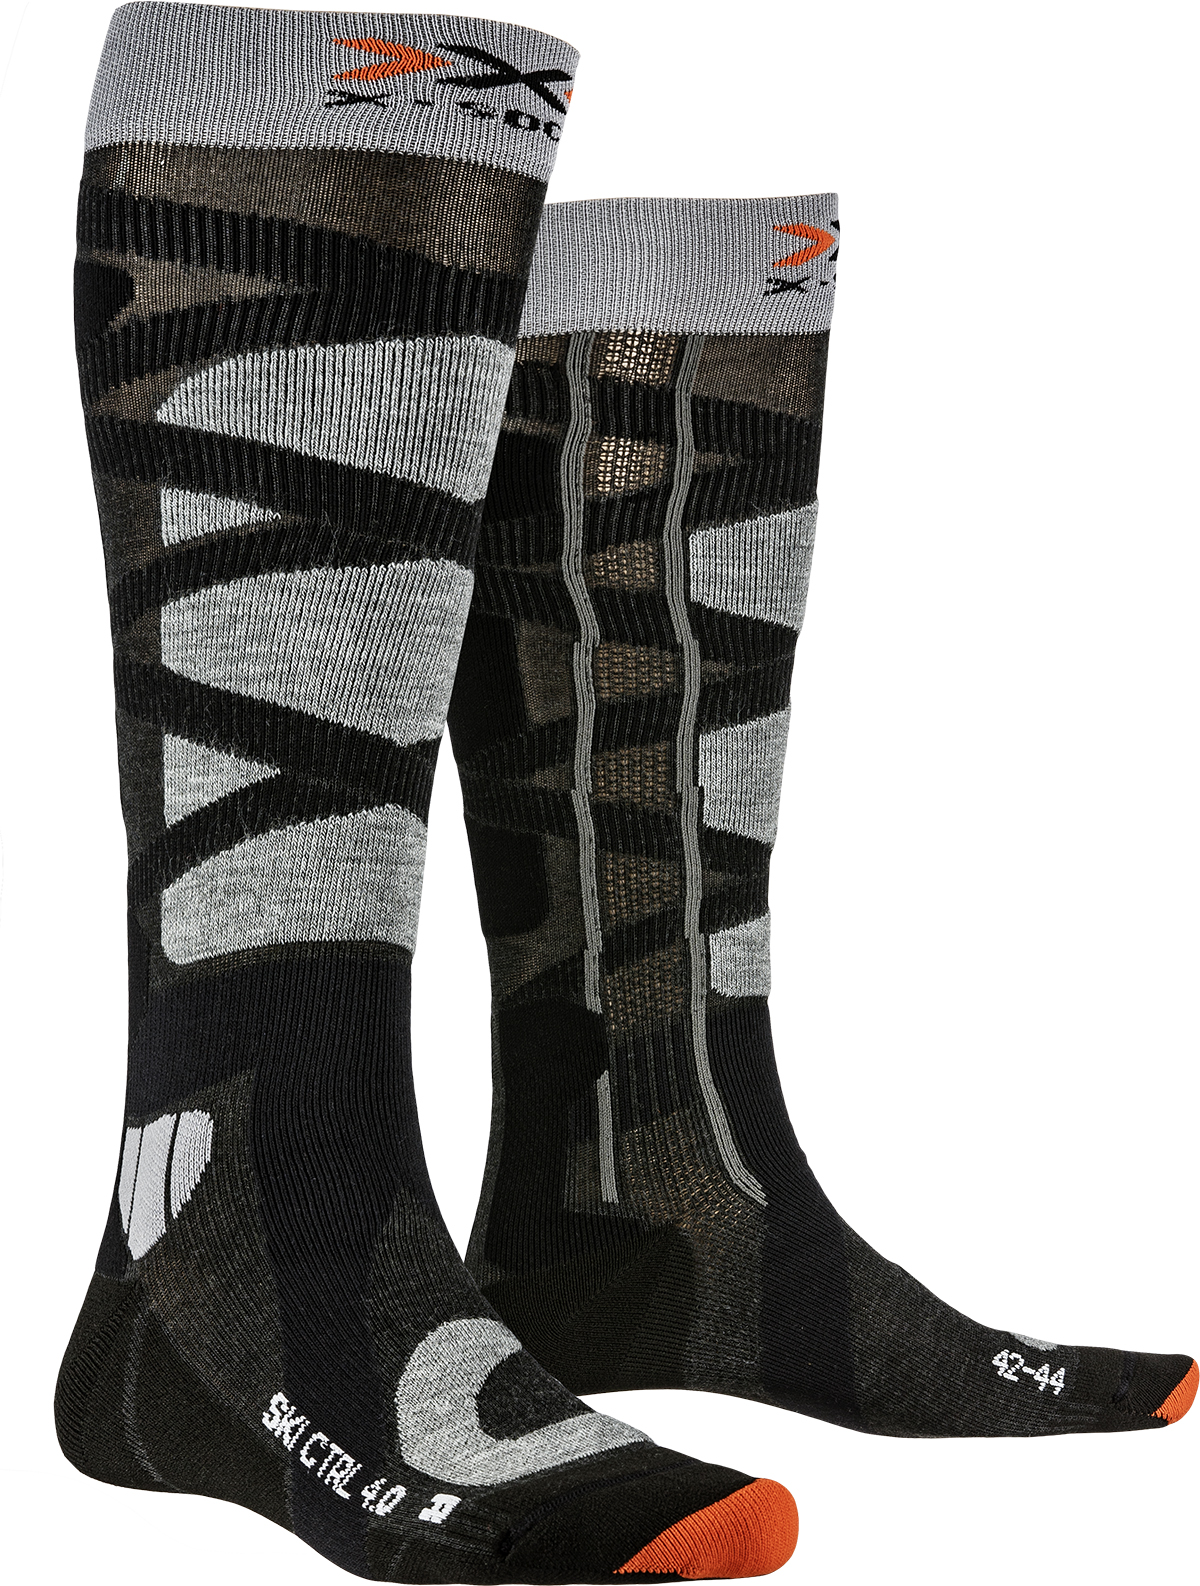 Носки с рисунком X-Socks Ski Control 4.0 Anthracite Melange/Stone Grey Melange (42-44)